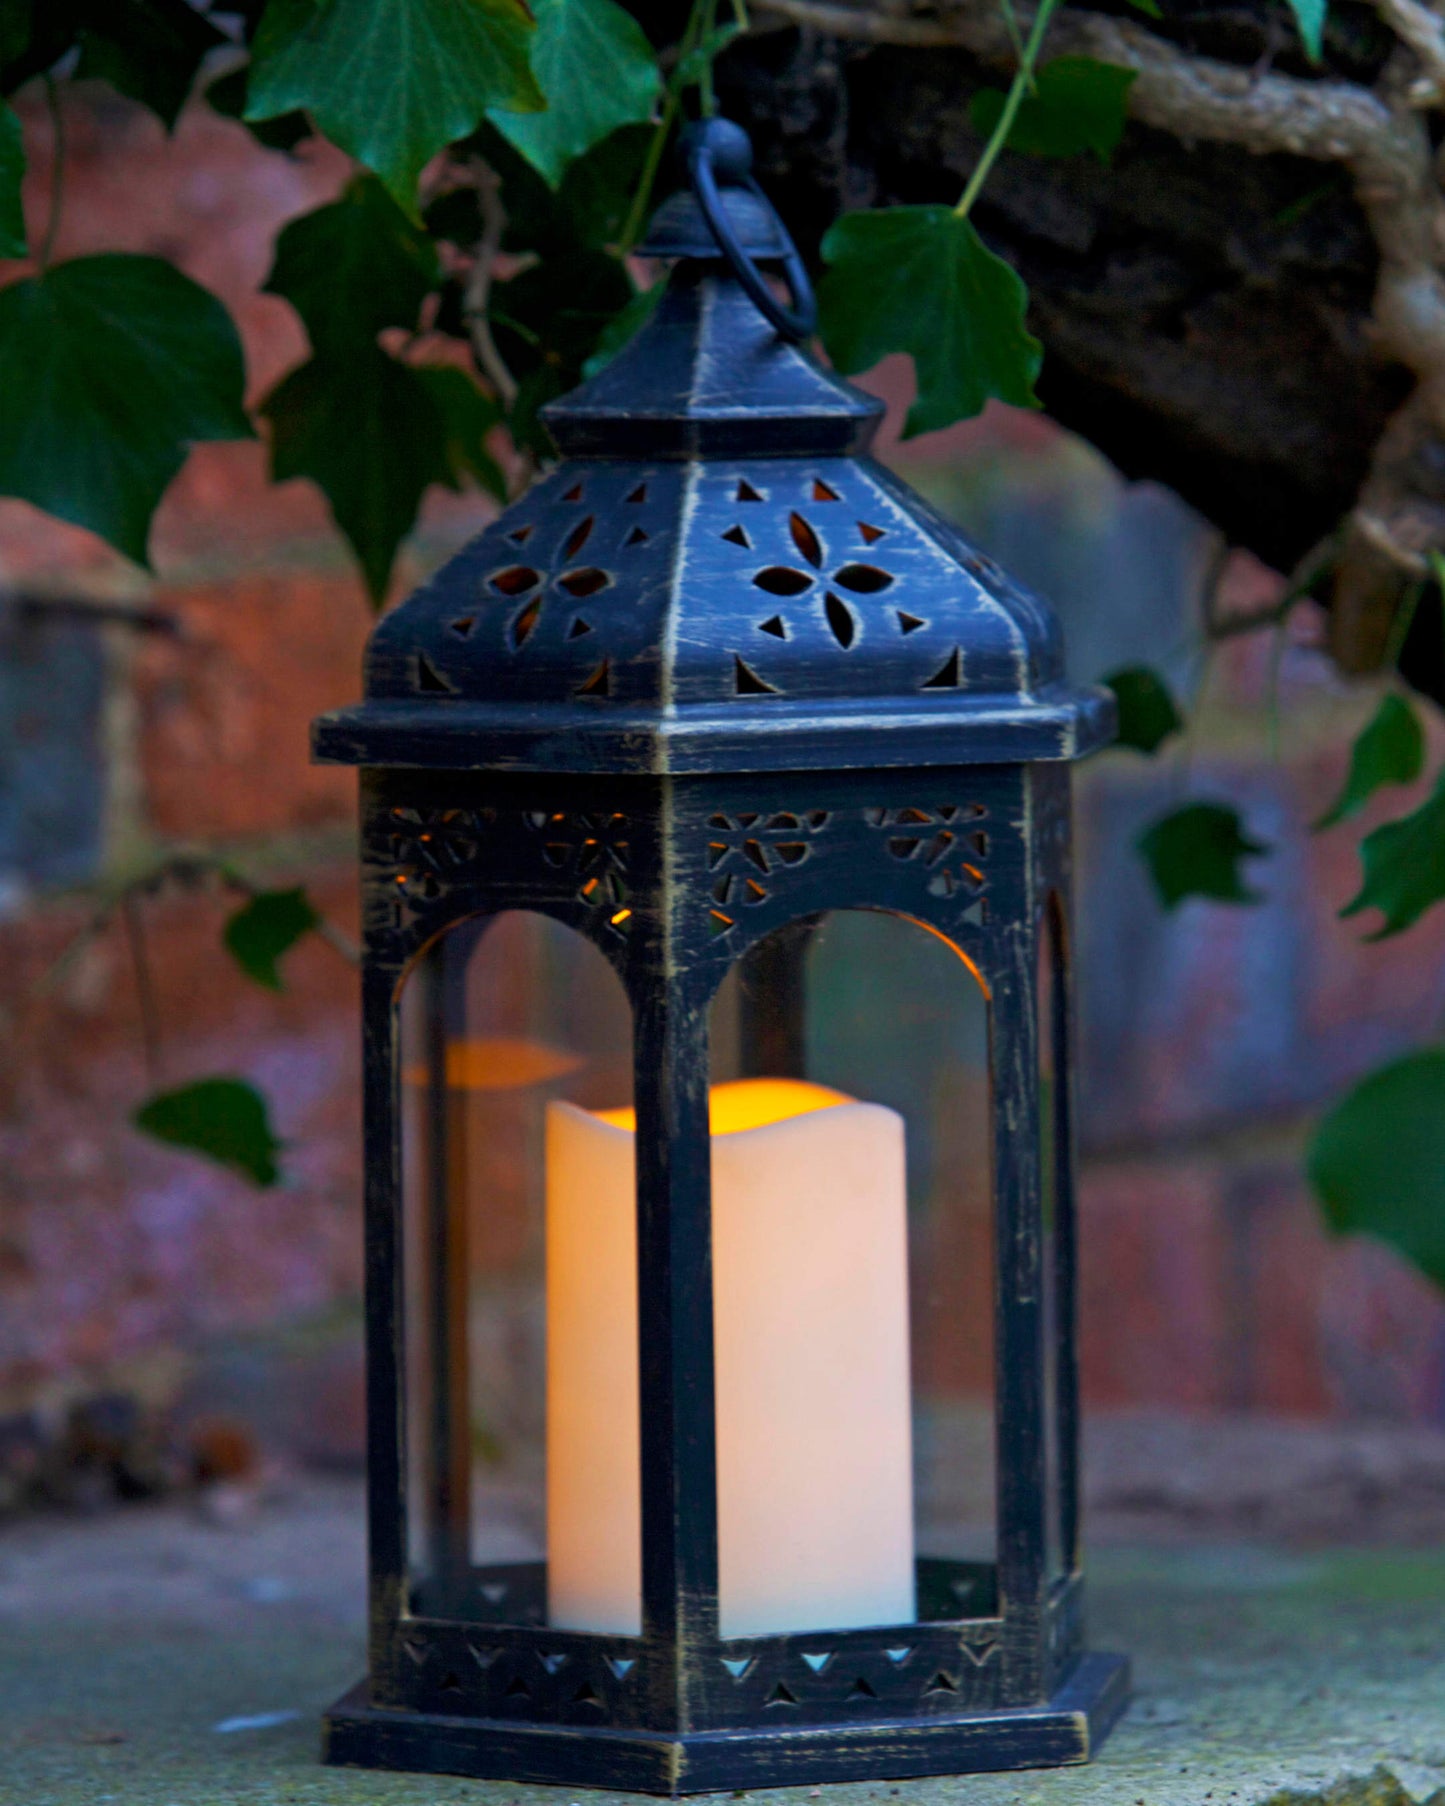 Moroccan orientálny lampáš na terasu s LED sviečkou v záhrade od Outside In designs